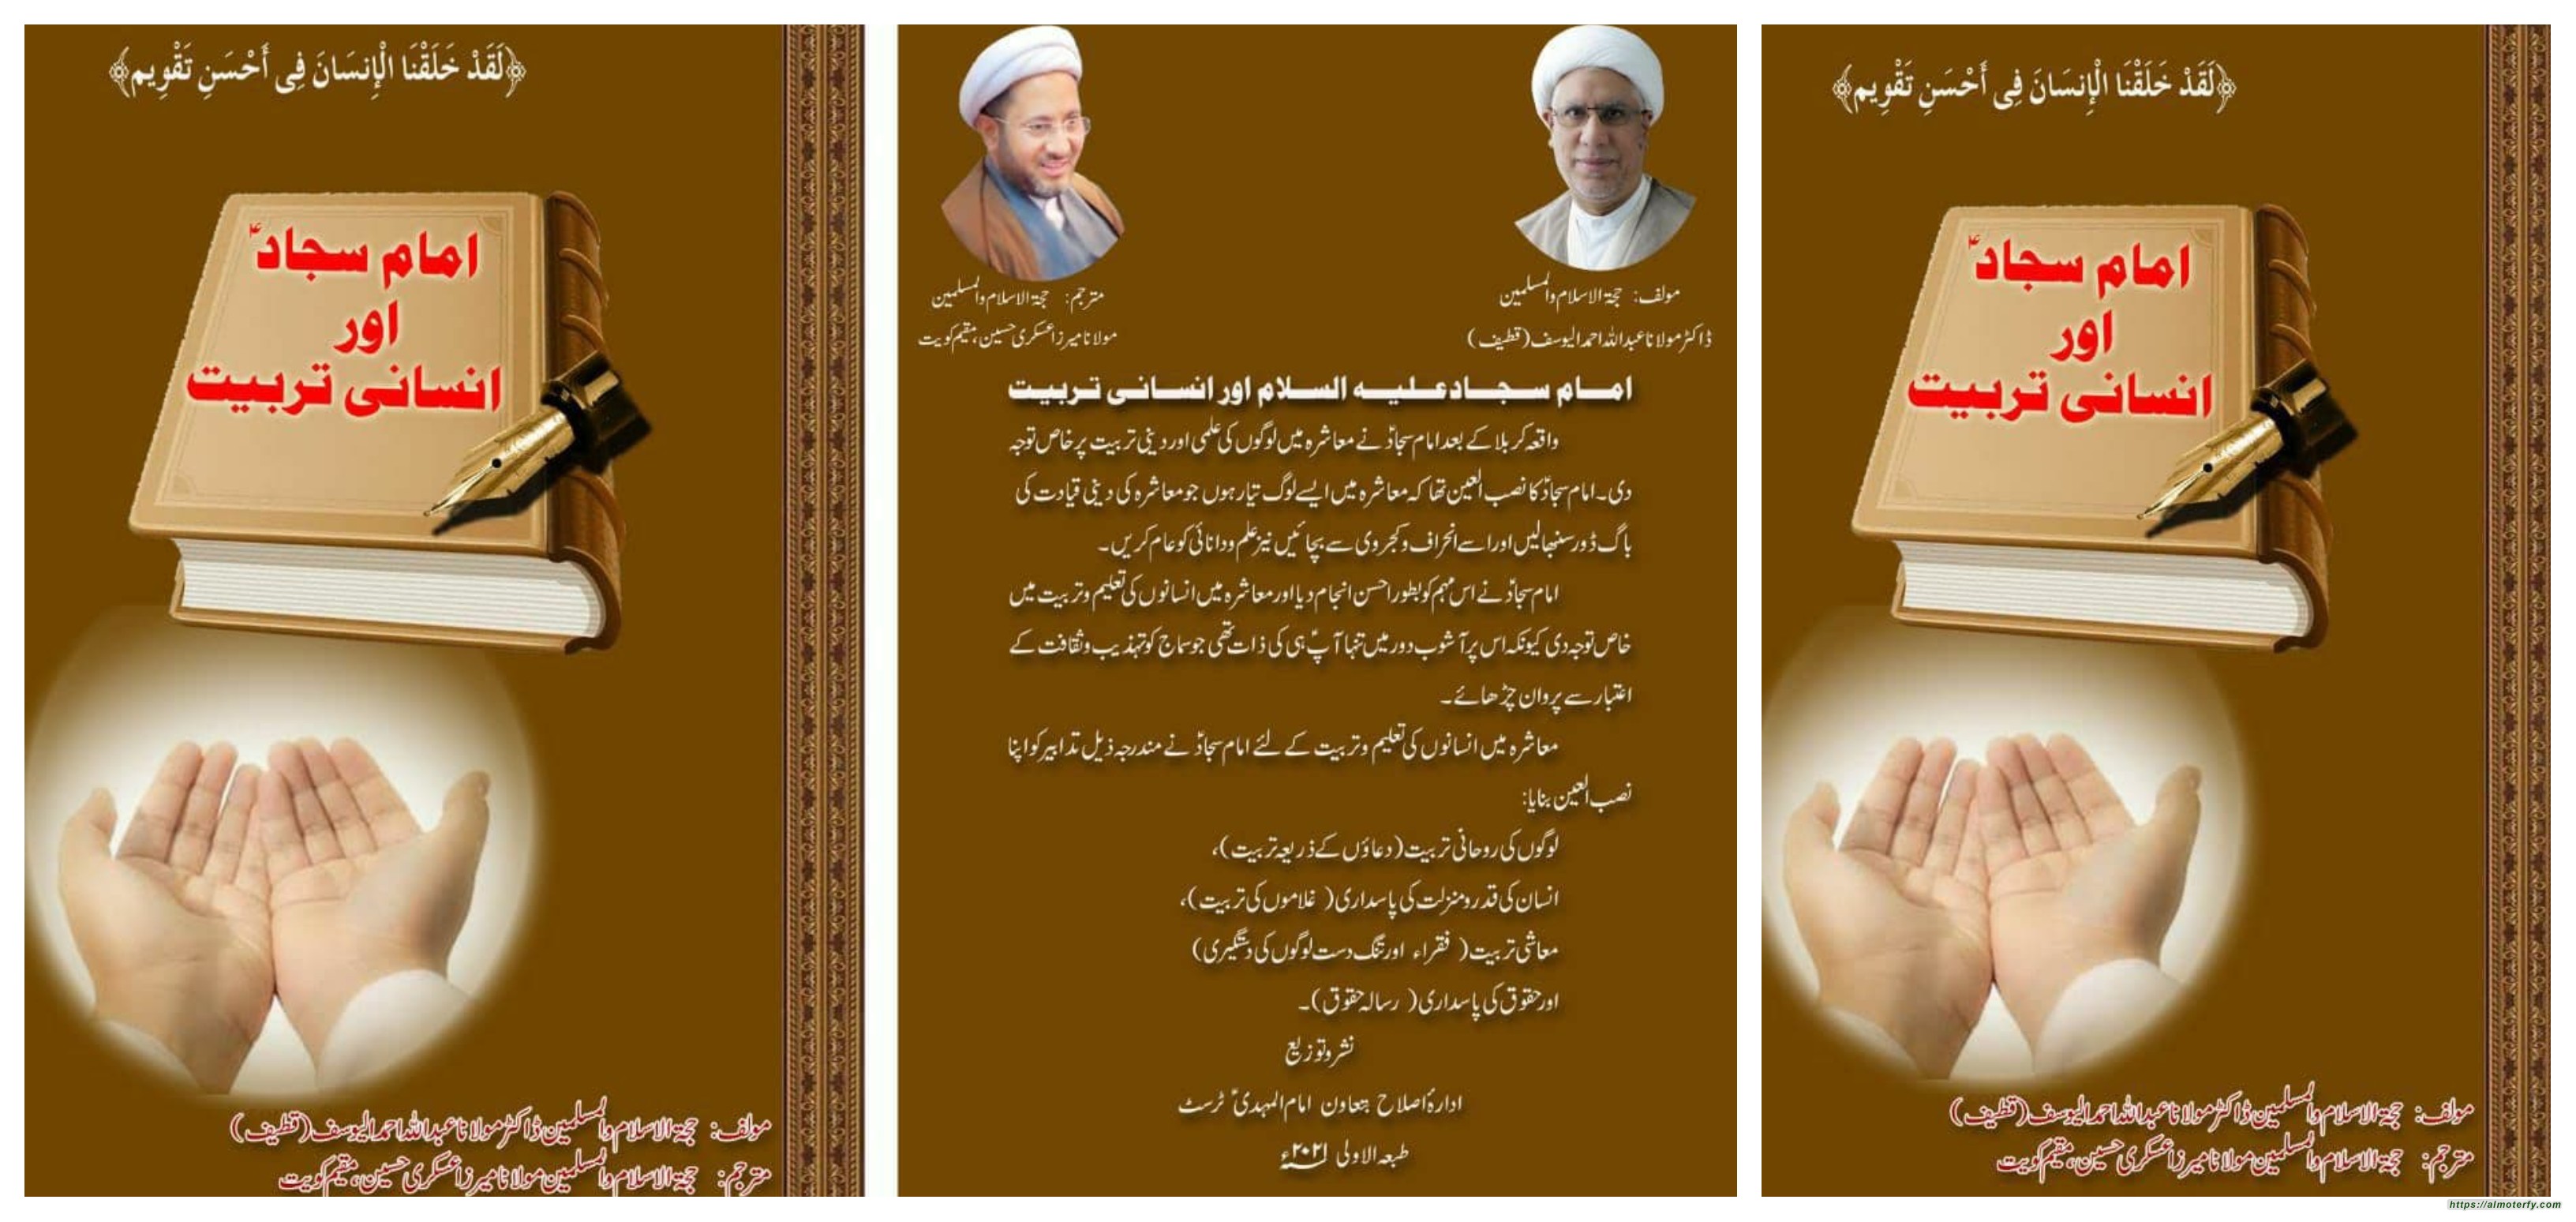 صدور كتاب: «الإمام السجاد (ع) وبناء الإنسان» للشيخ اليوسف باللغة الأوردية